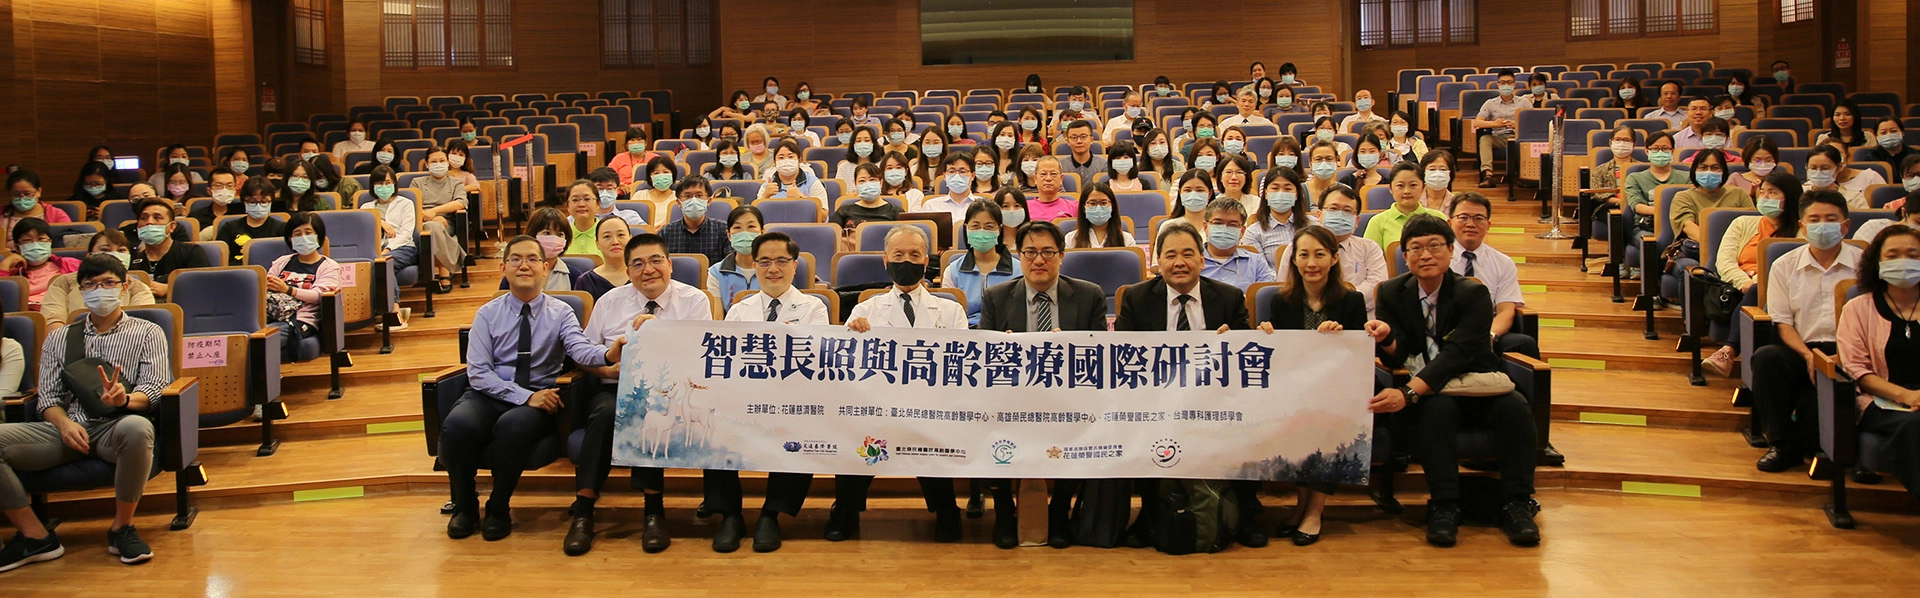 七月四日上午，花蓮慈濟醫院舉辦「智慧長照與高齡醫療國際研討會」